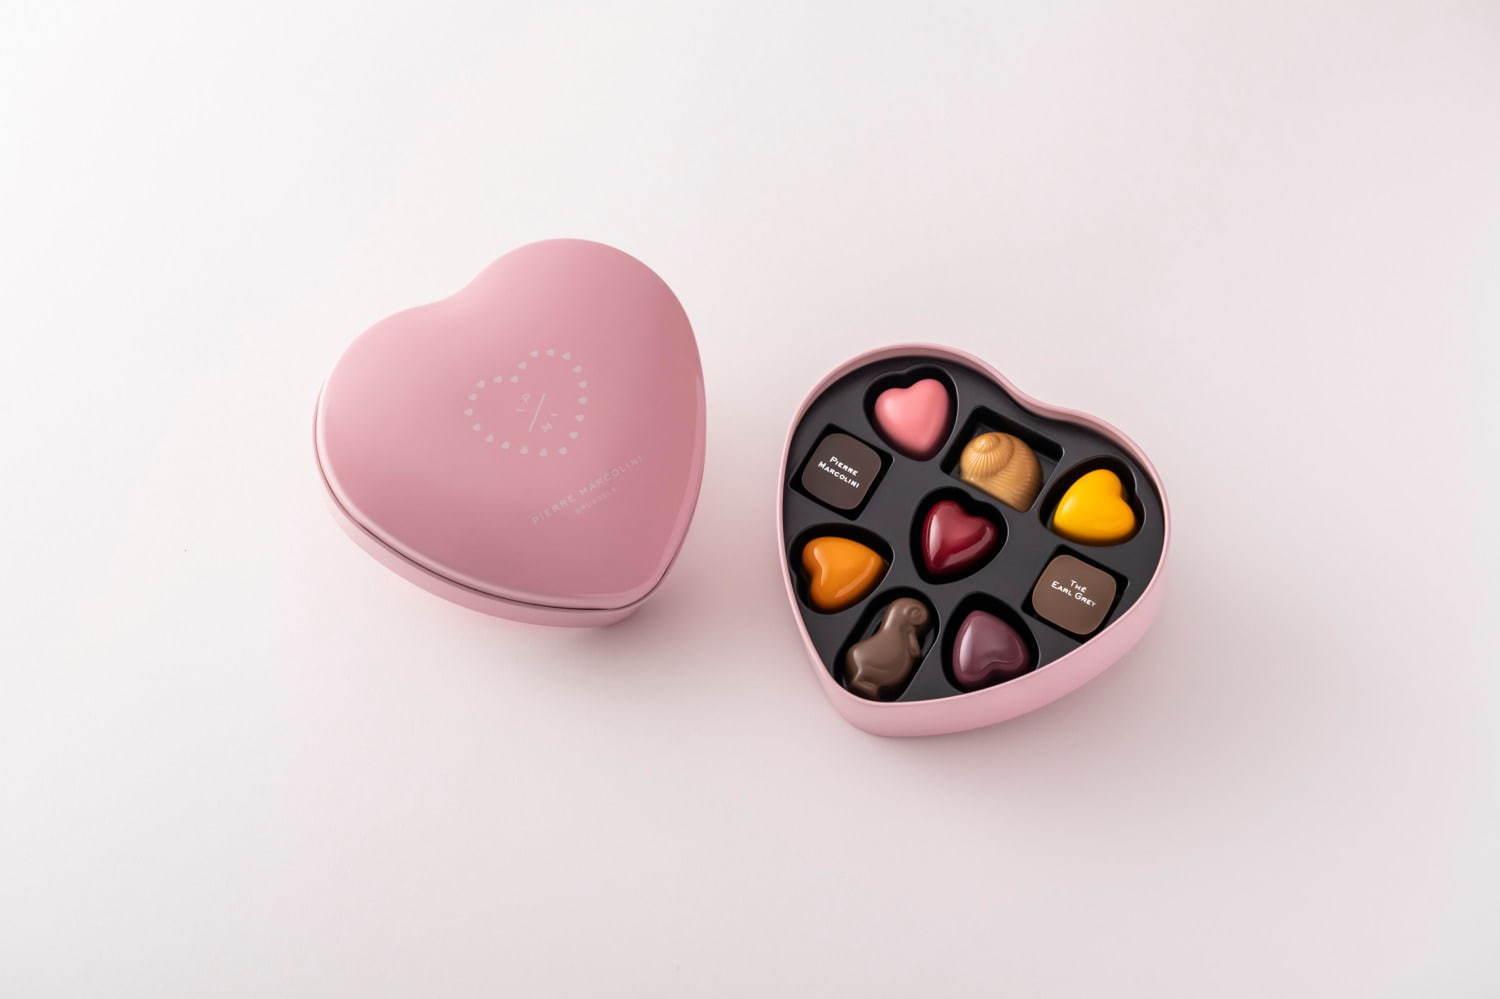 ピエール マルコリーニのバレンタイン、ハート型チョコ缶や真っ赤なハートチョコを詰めわせたBOXなど コピー